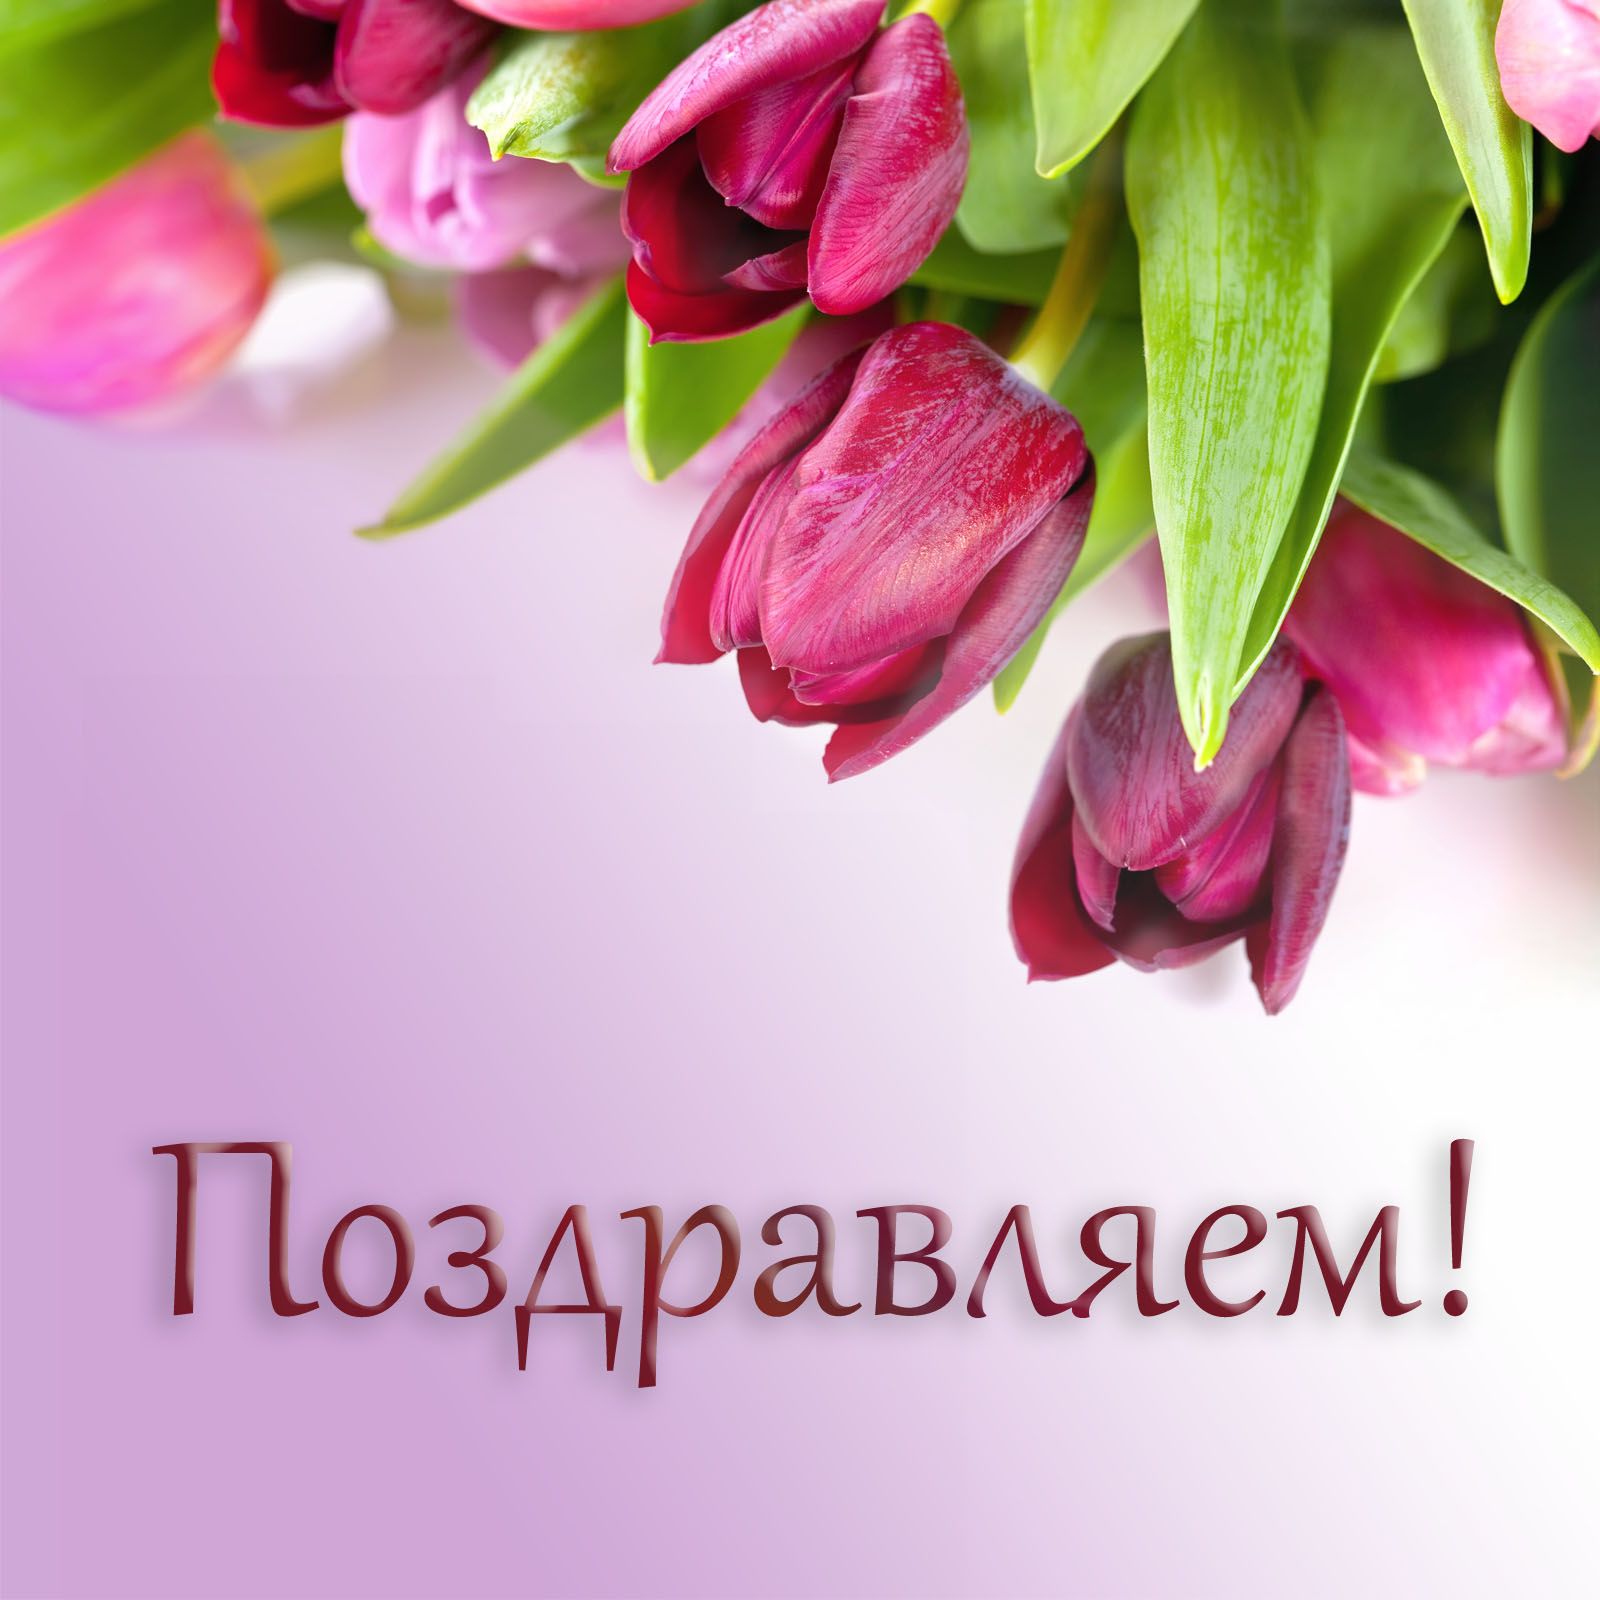 25 мая – большой юбилей нашей дорогой мамы и любимой бабушки Шигаповой Кадрии Давлетшовны